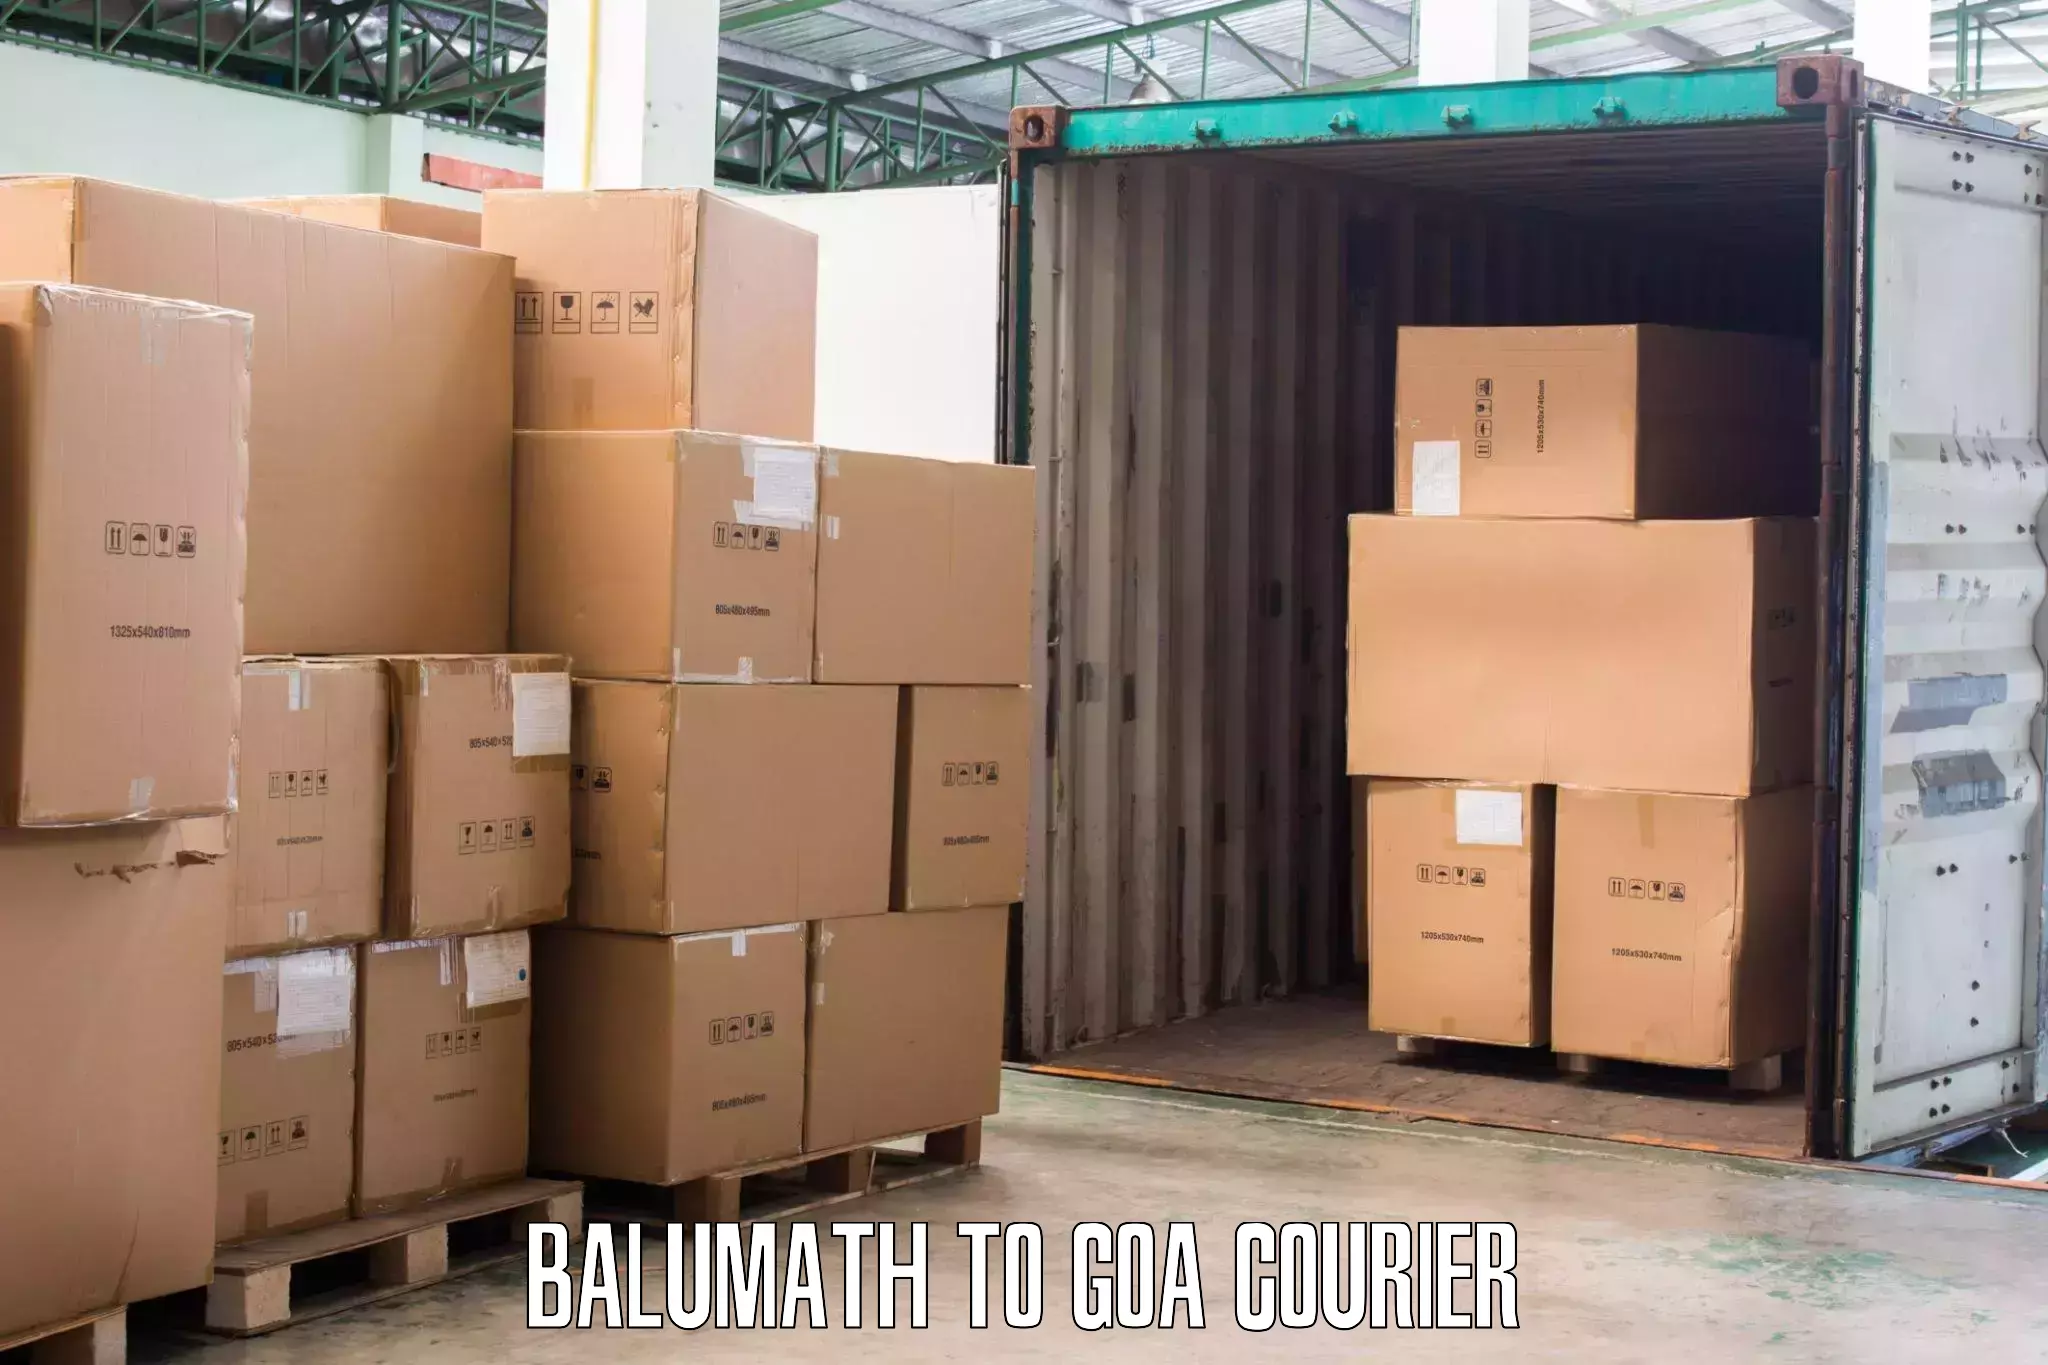 Moving and packing experts Balumath to Vasco da Gama